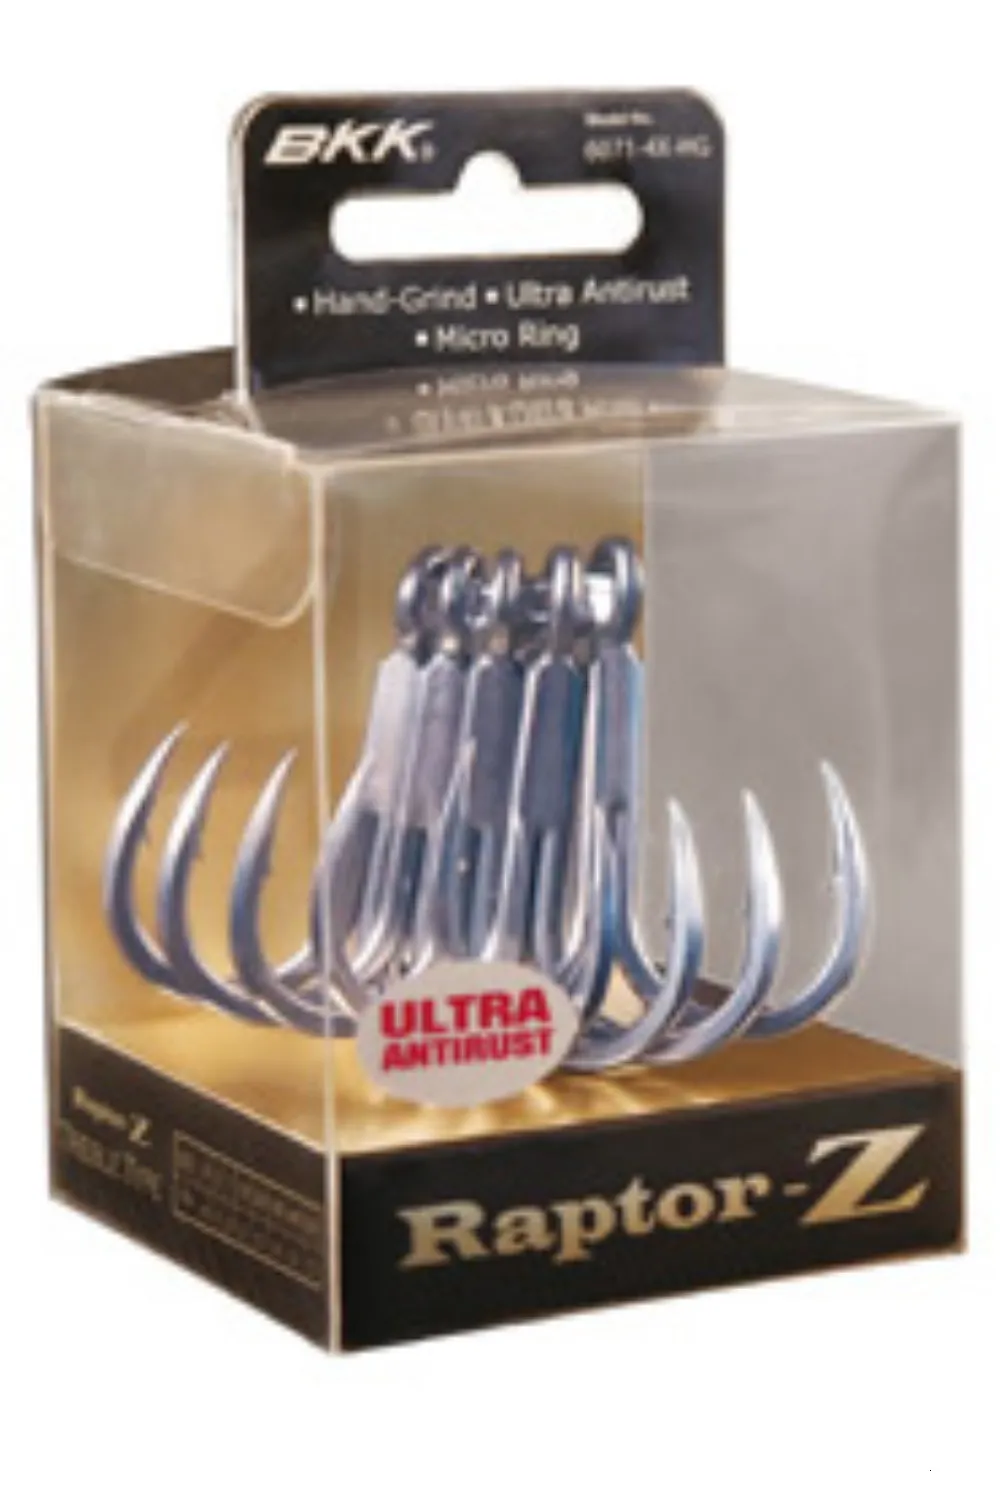 BKK Raptor Z Treble 2 0 Fishing Hooks 6071 4X HG, 230614 From Men06, $21.8